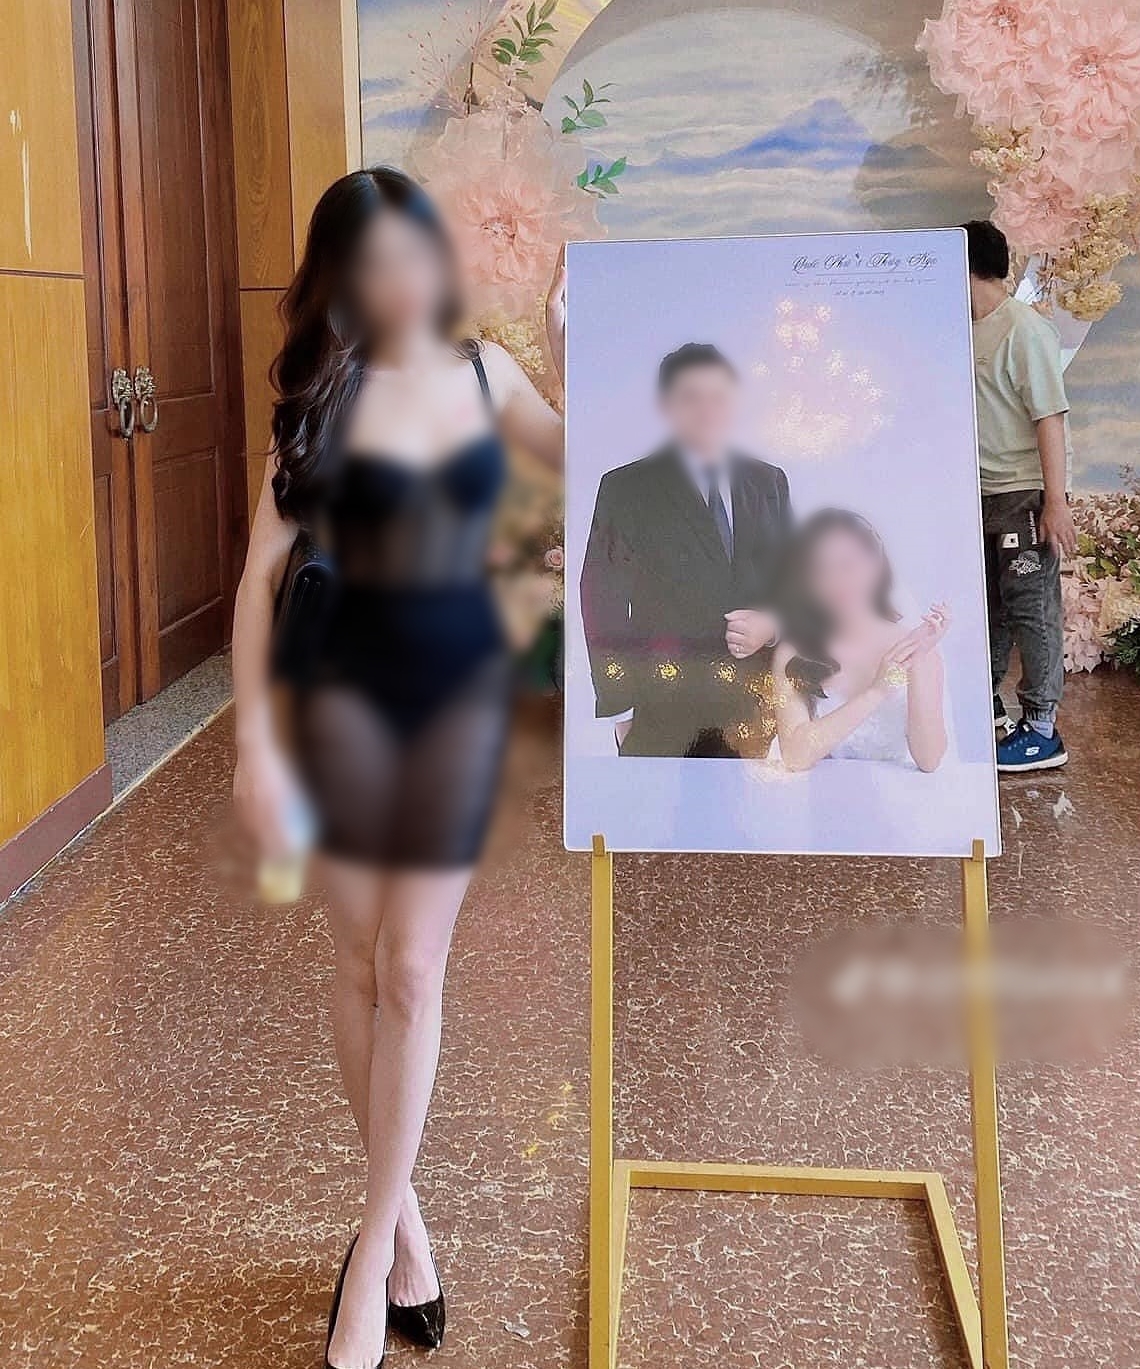 Bức ảnh khiến netizen tranh cãi về trang phục đi ăn cưới của cô gái.